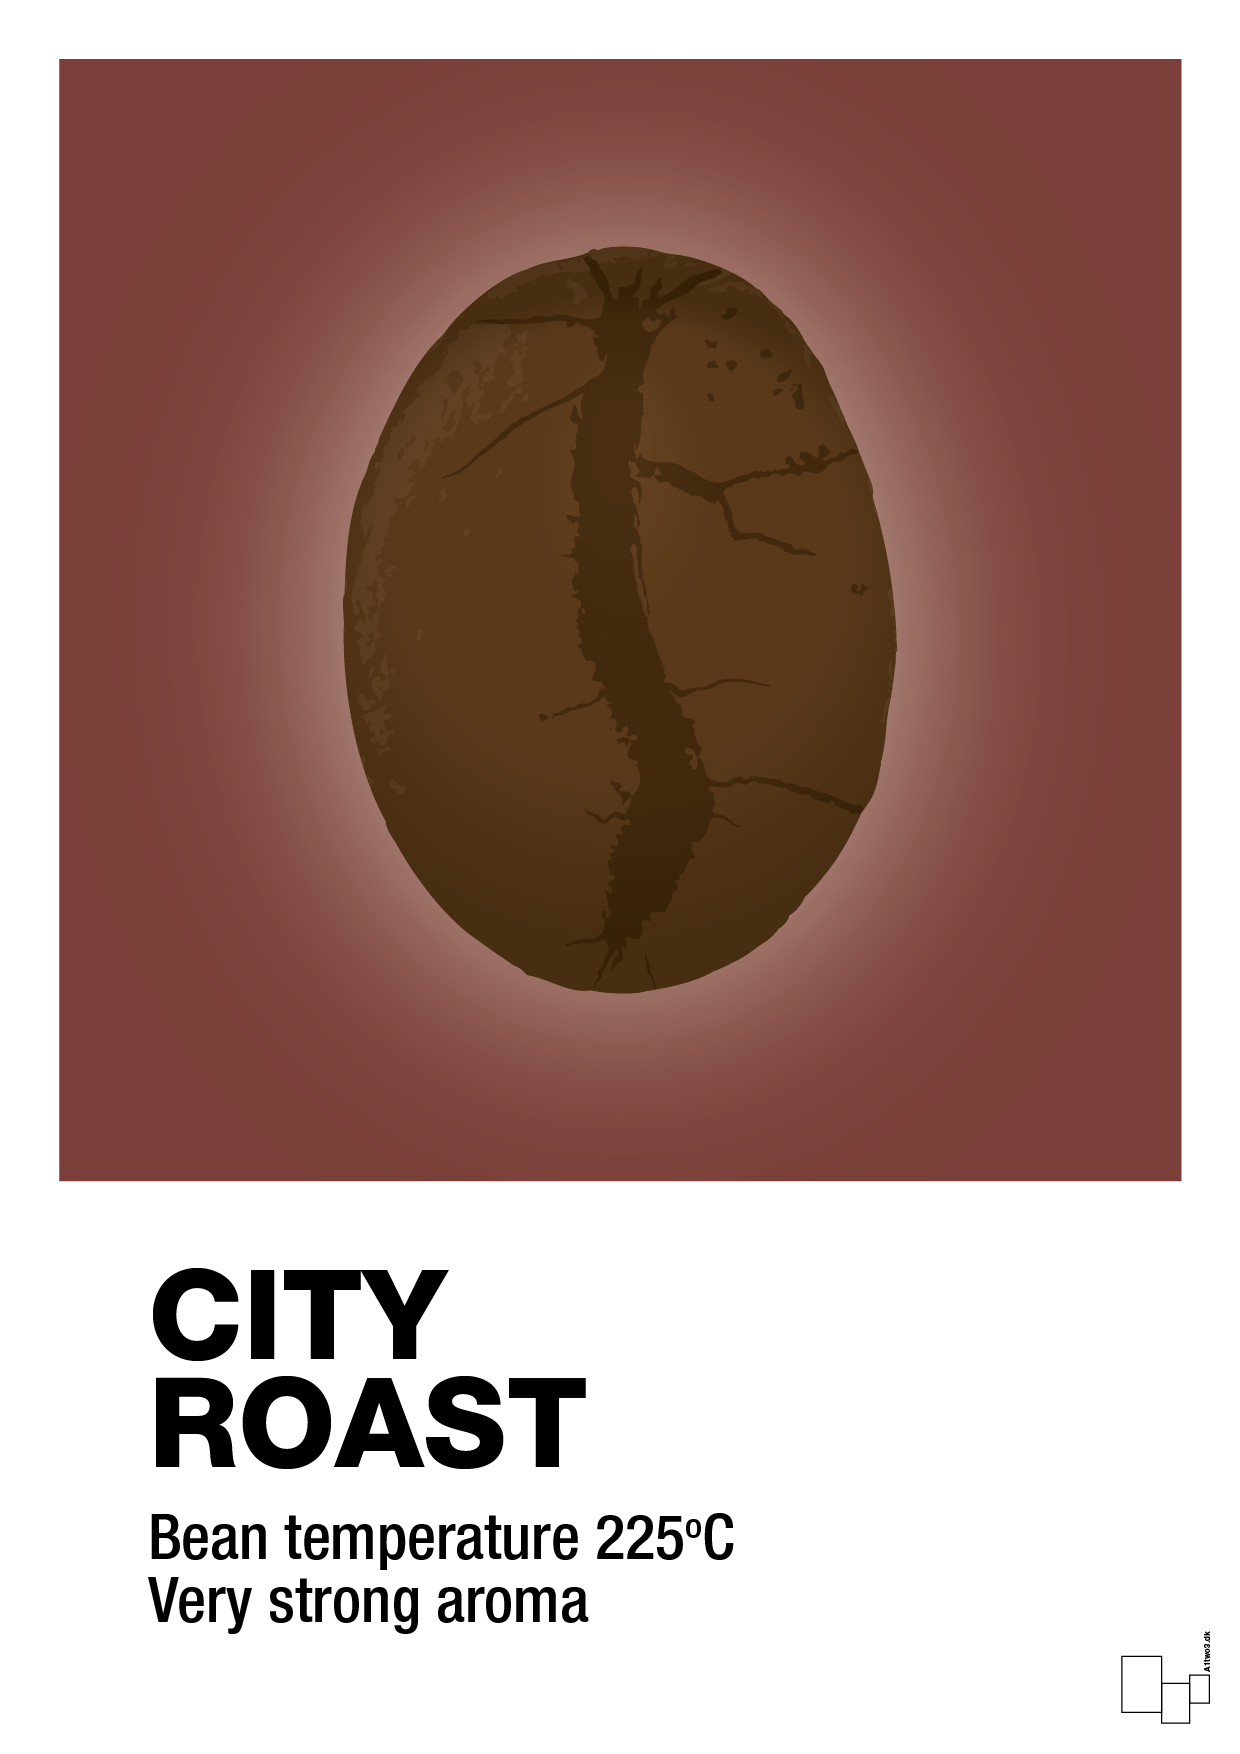 city roast - Plakat med Mad & Drikke i Red Pepper